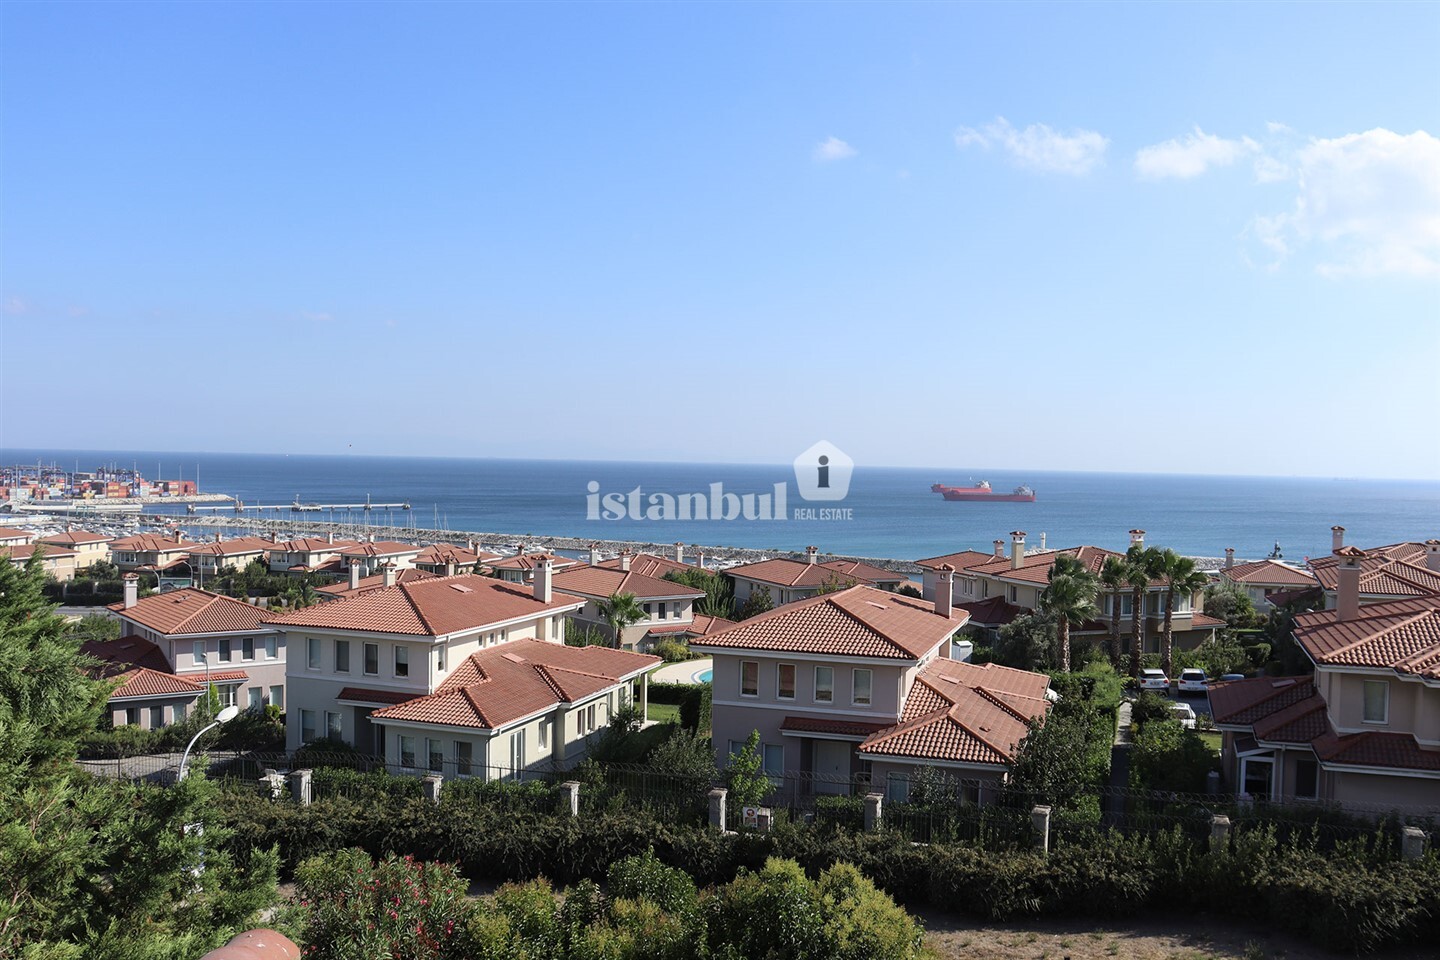 Kalyon Marina Villaları luxury houses and villas for sale in istanbul turkey